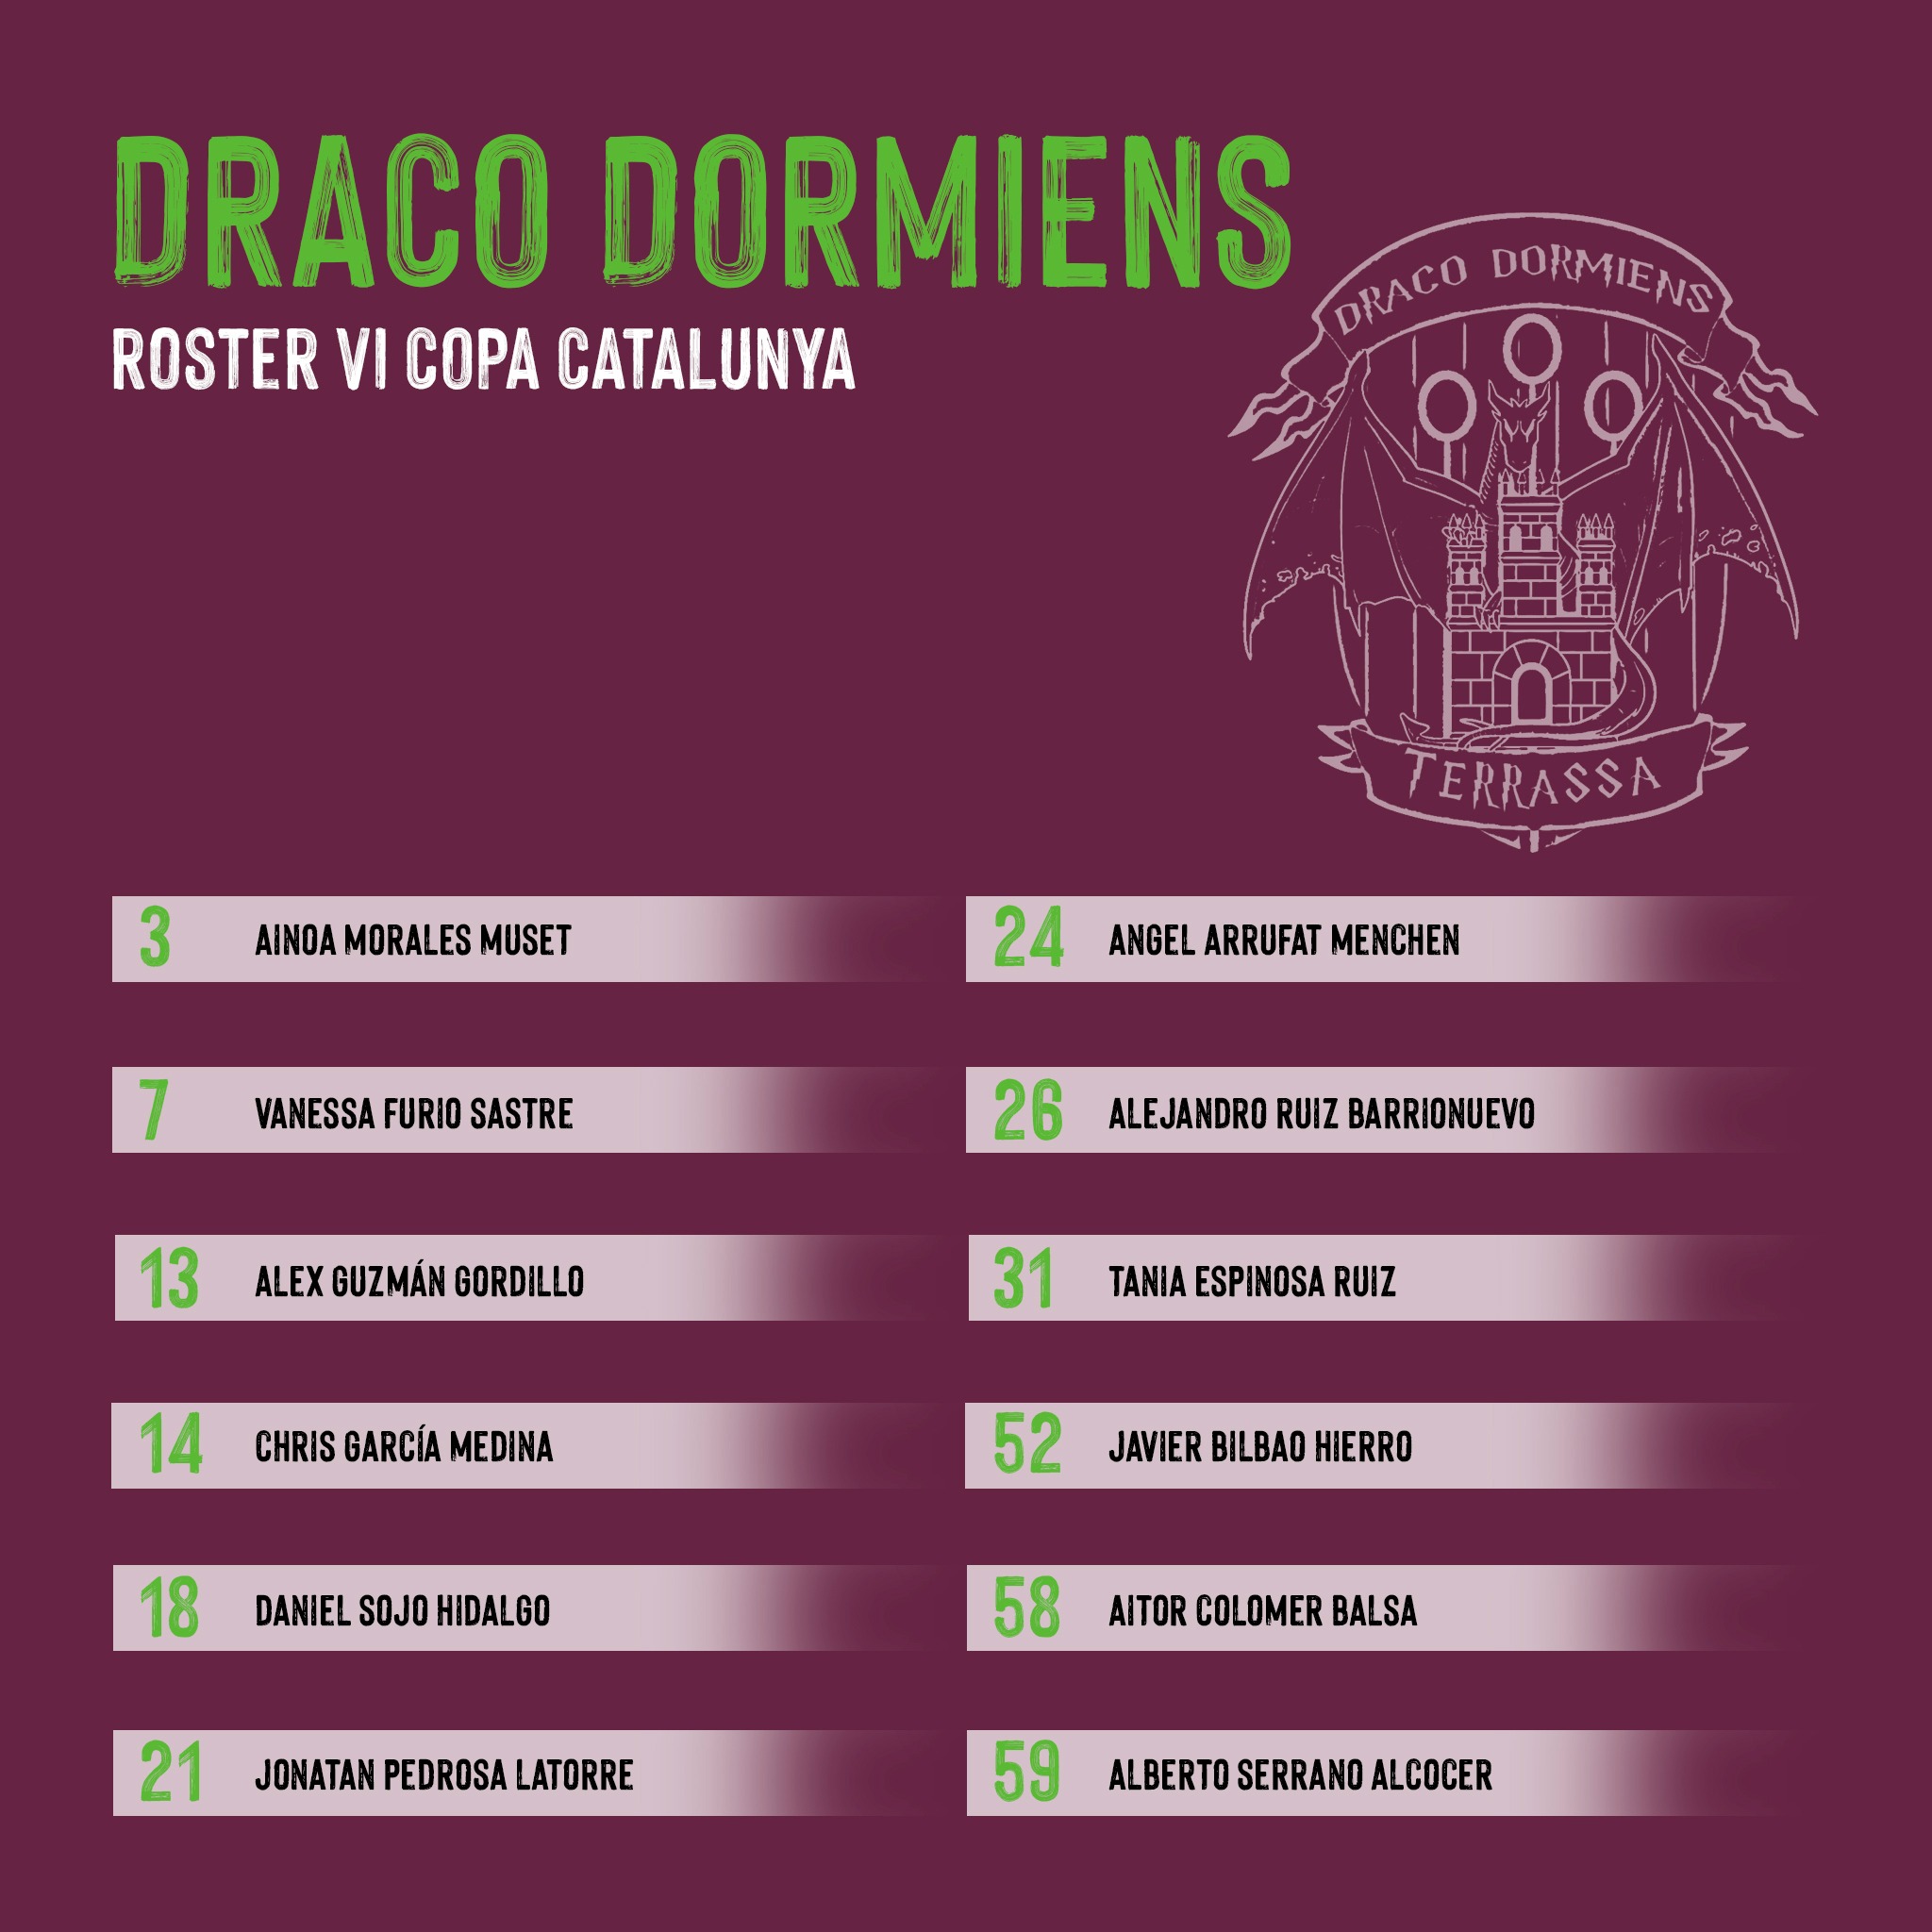 Roster VI Copa Catalunya Draco